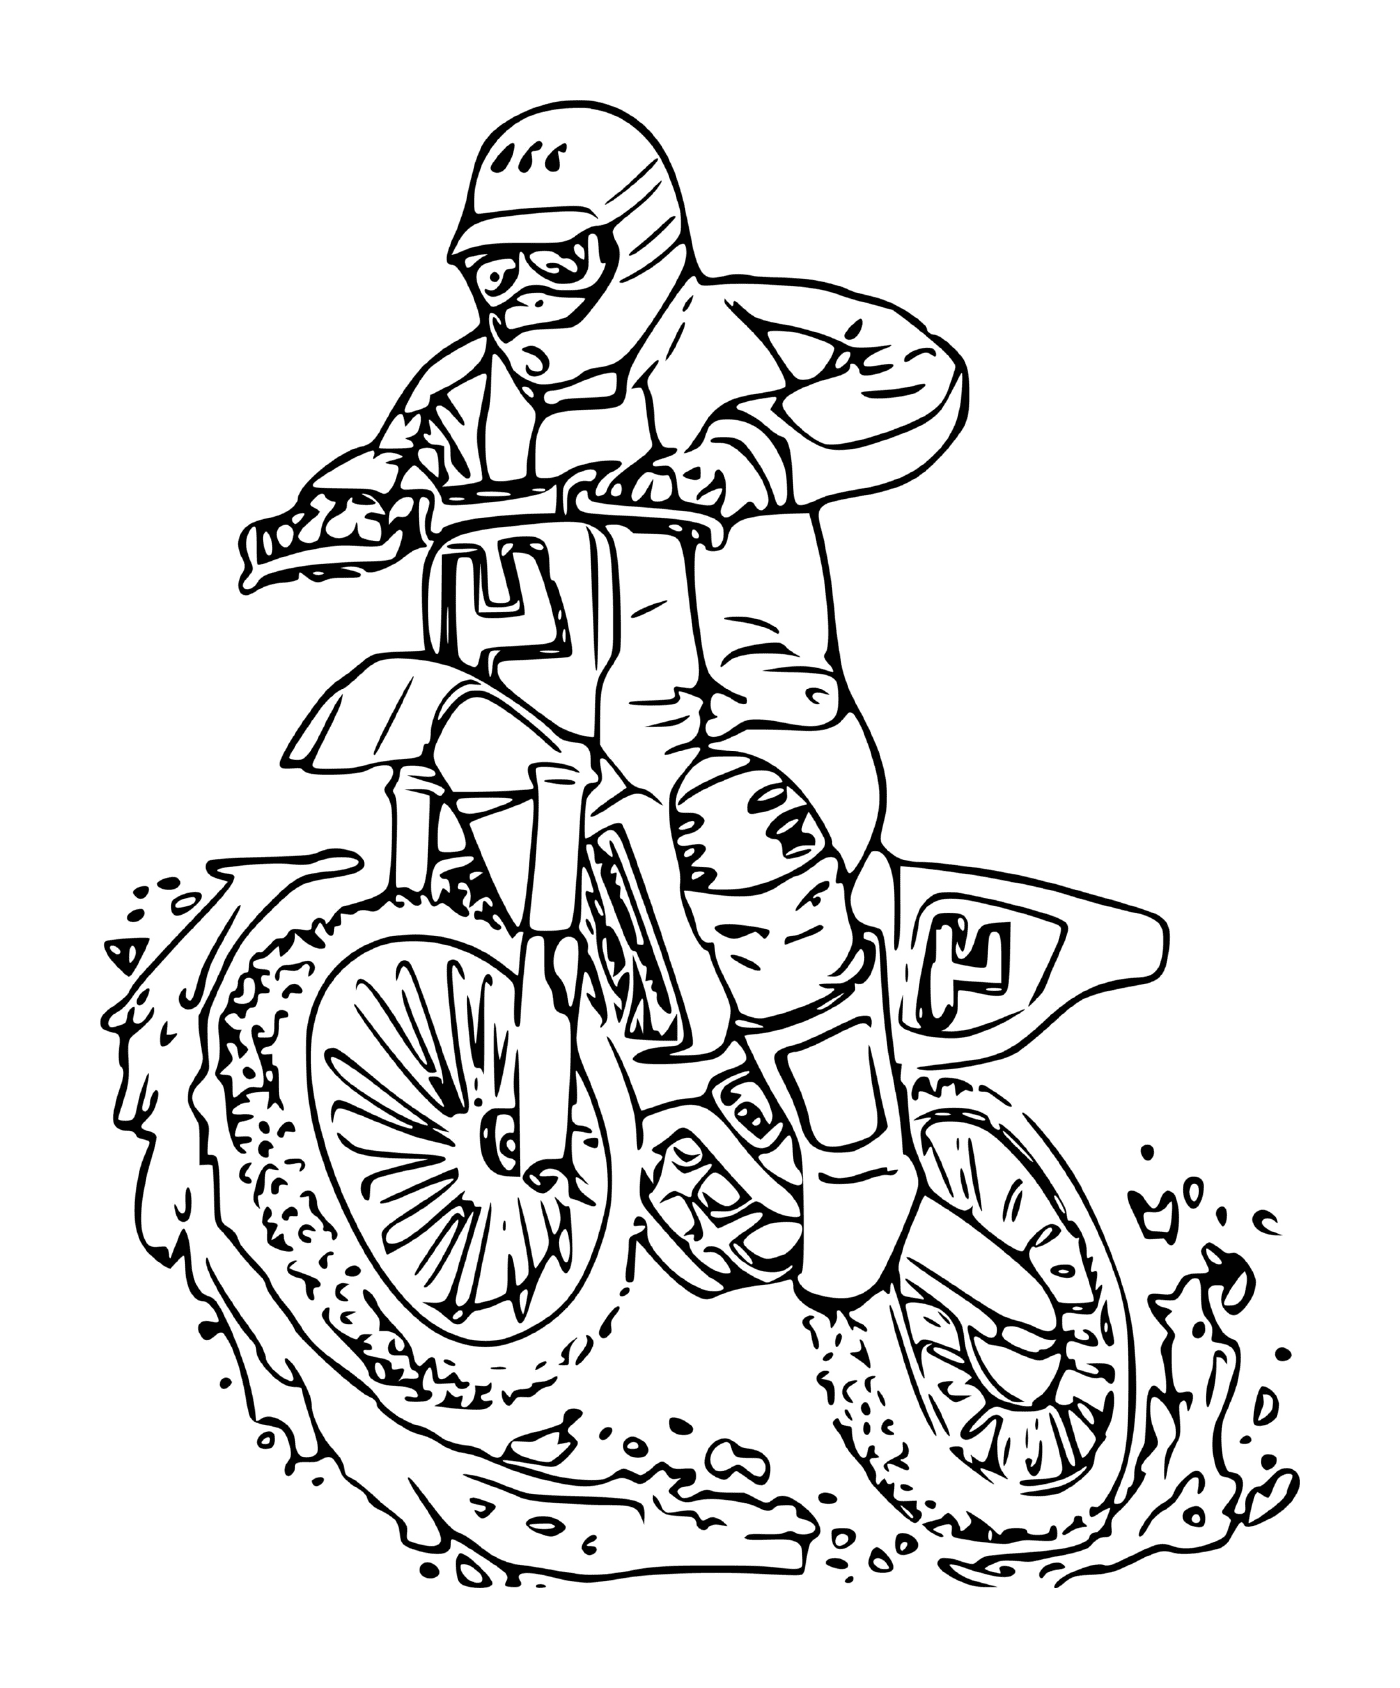  мужчина на кресте мотоцикла 